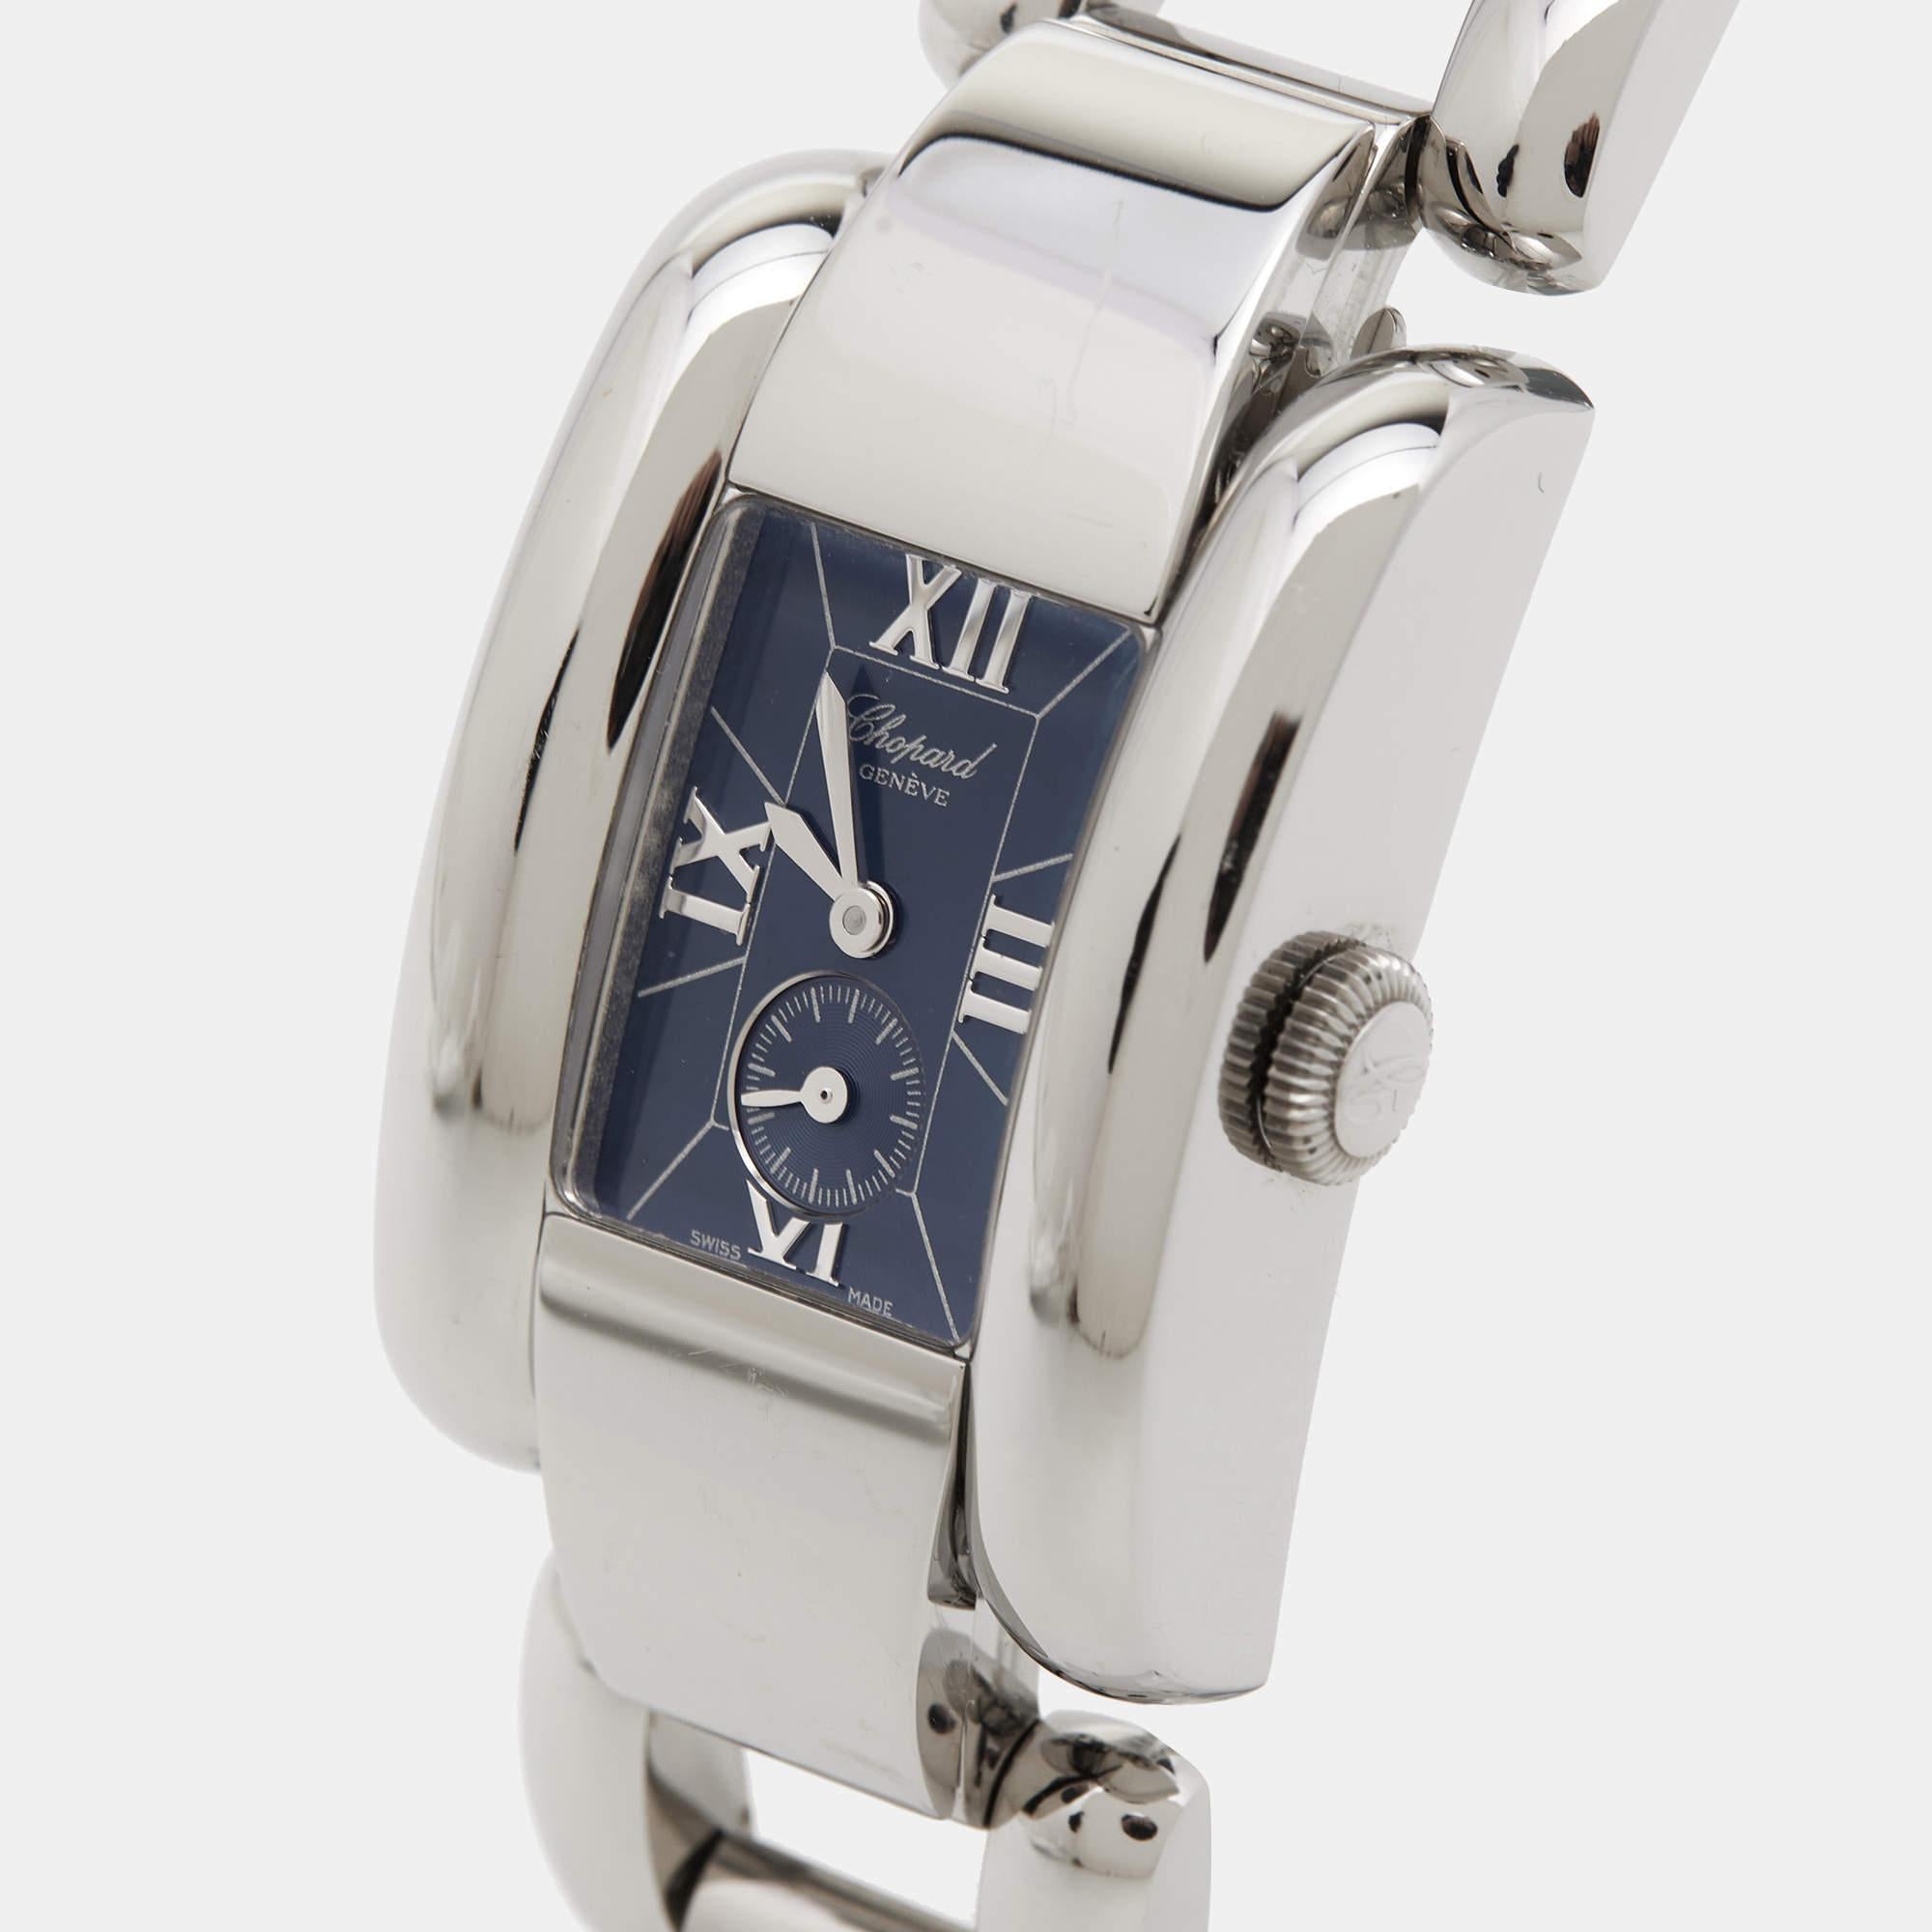 Laissez cette belle montre-bracelet Chopard vous accompagner avec aisance et dans un style luxueux. Magnifiquement fabriquée à l'aide de matériaux de qualité supérieure, cette montre de marque authentique est conçue pour être un accessoire